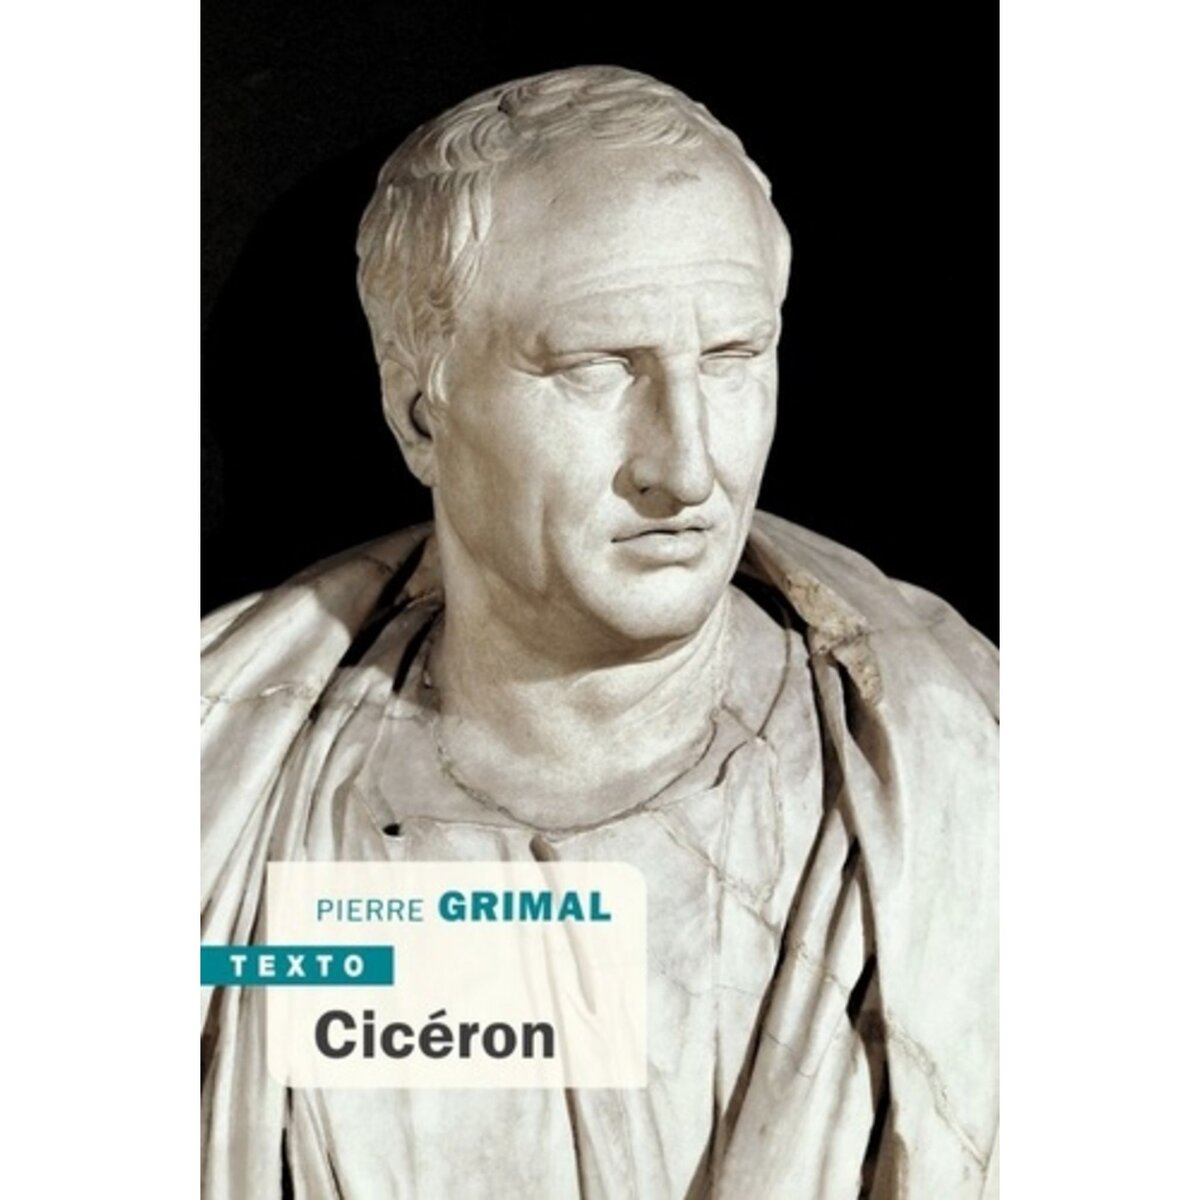  CICERON, Grimal Pierre